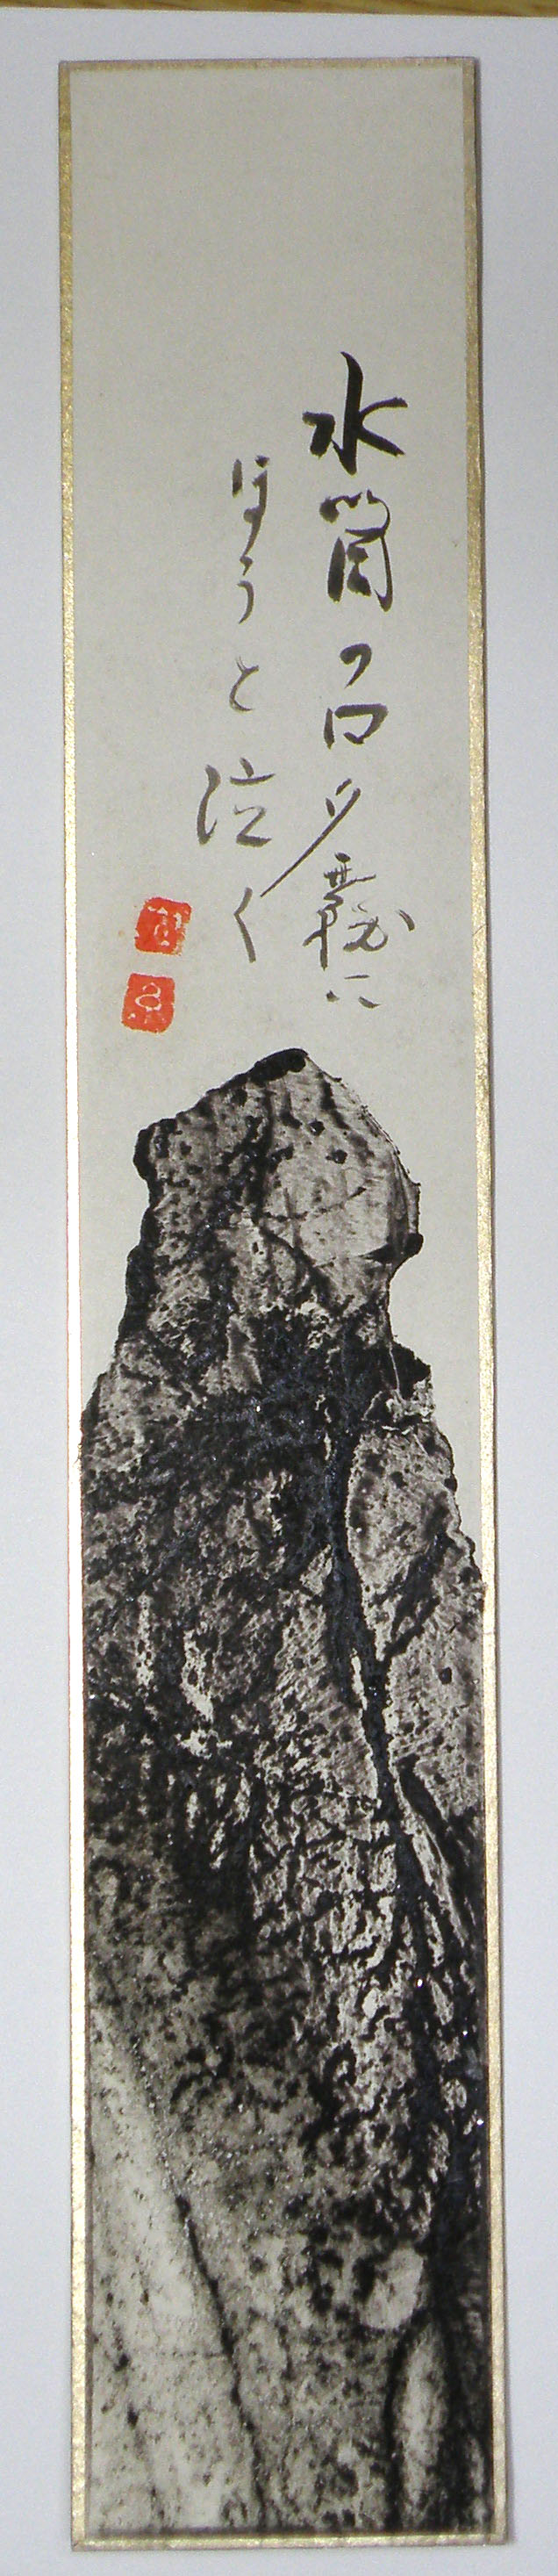 配送設置一原有徳「樽前山」1977年・亜鉛凸版・コラージュ・サイン入・額付・美品 銅版画、エッチング